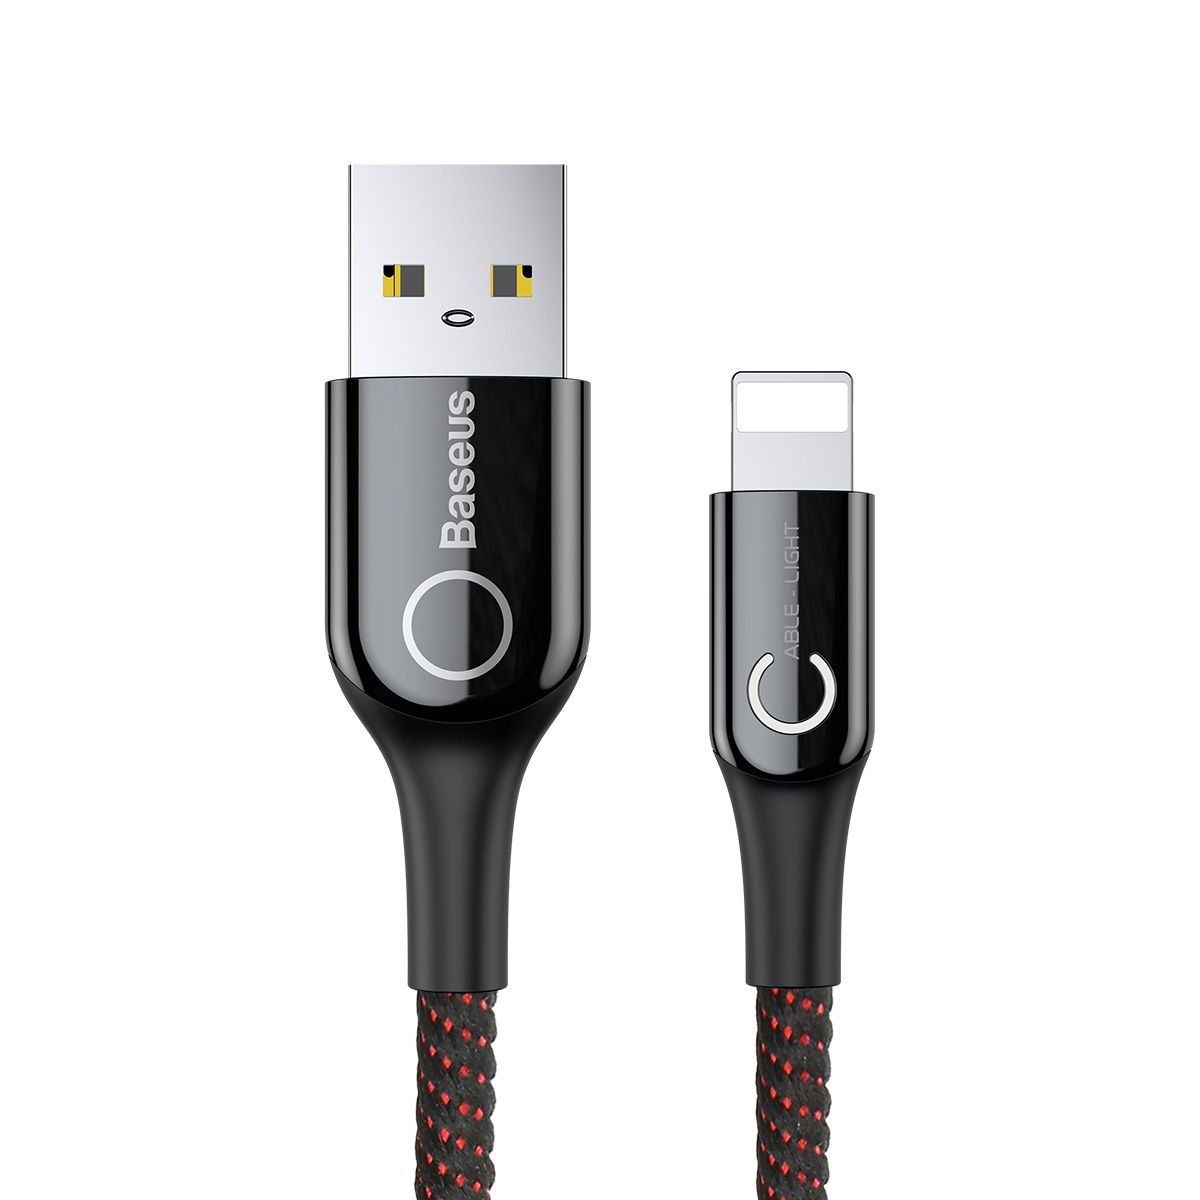 Кабель Baseus C-shaped USB - Lightning 2.4A (CALCD), цвет- черный+красный, длина - 1м от prem.by 